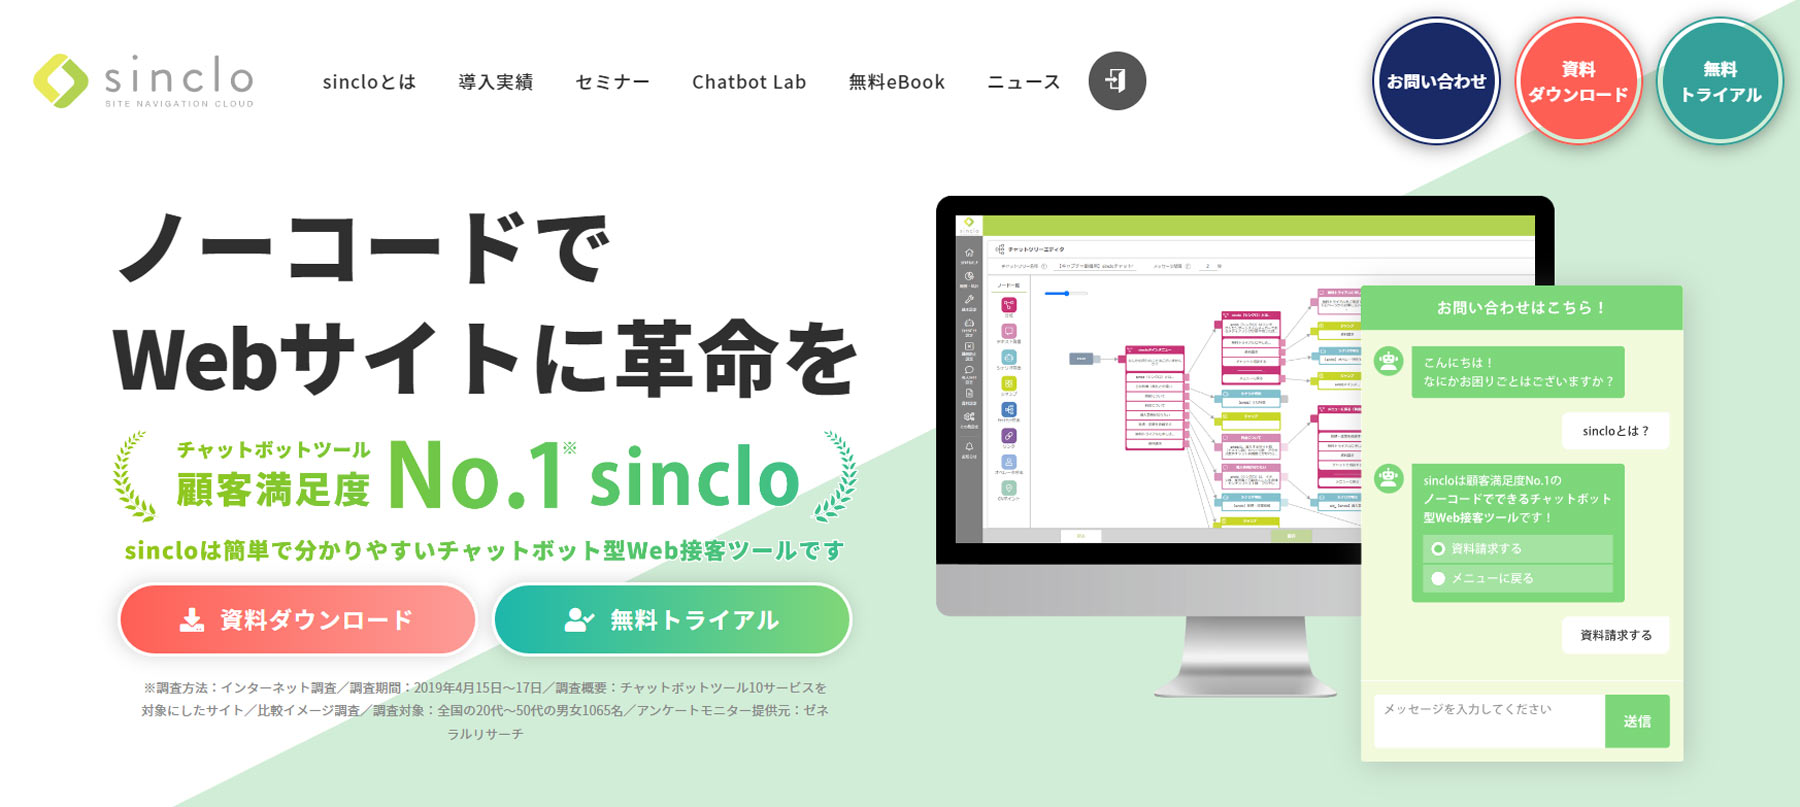 sinclo公式Webサイト